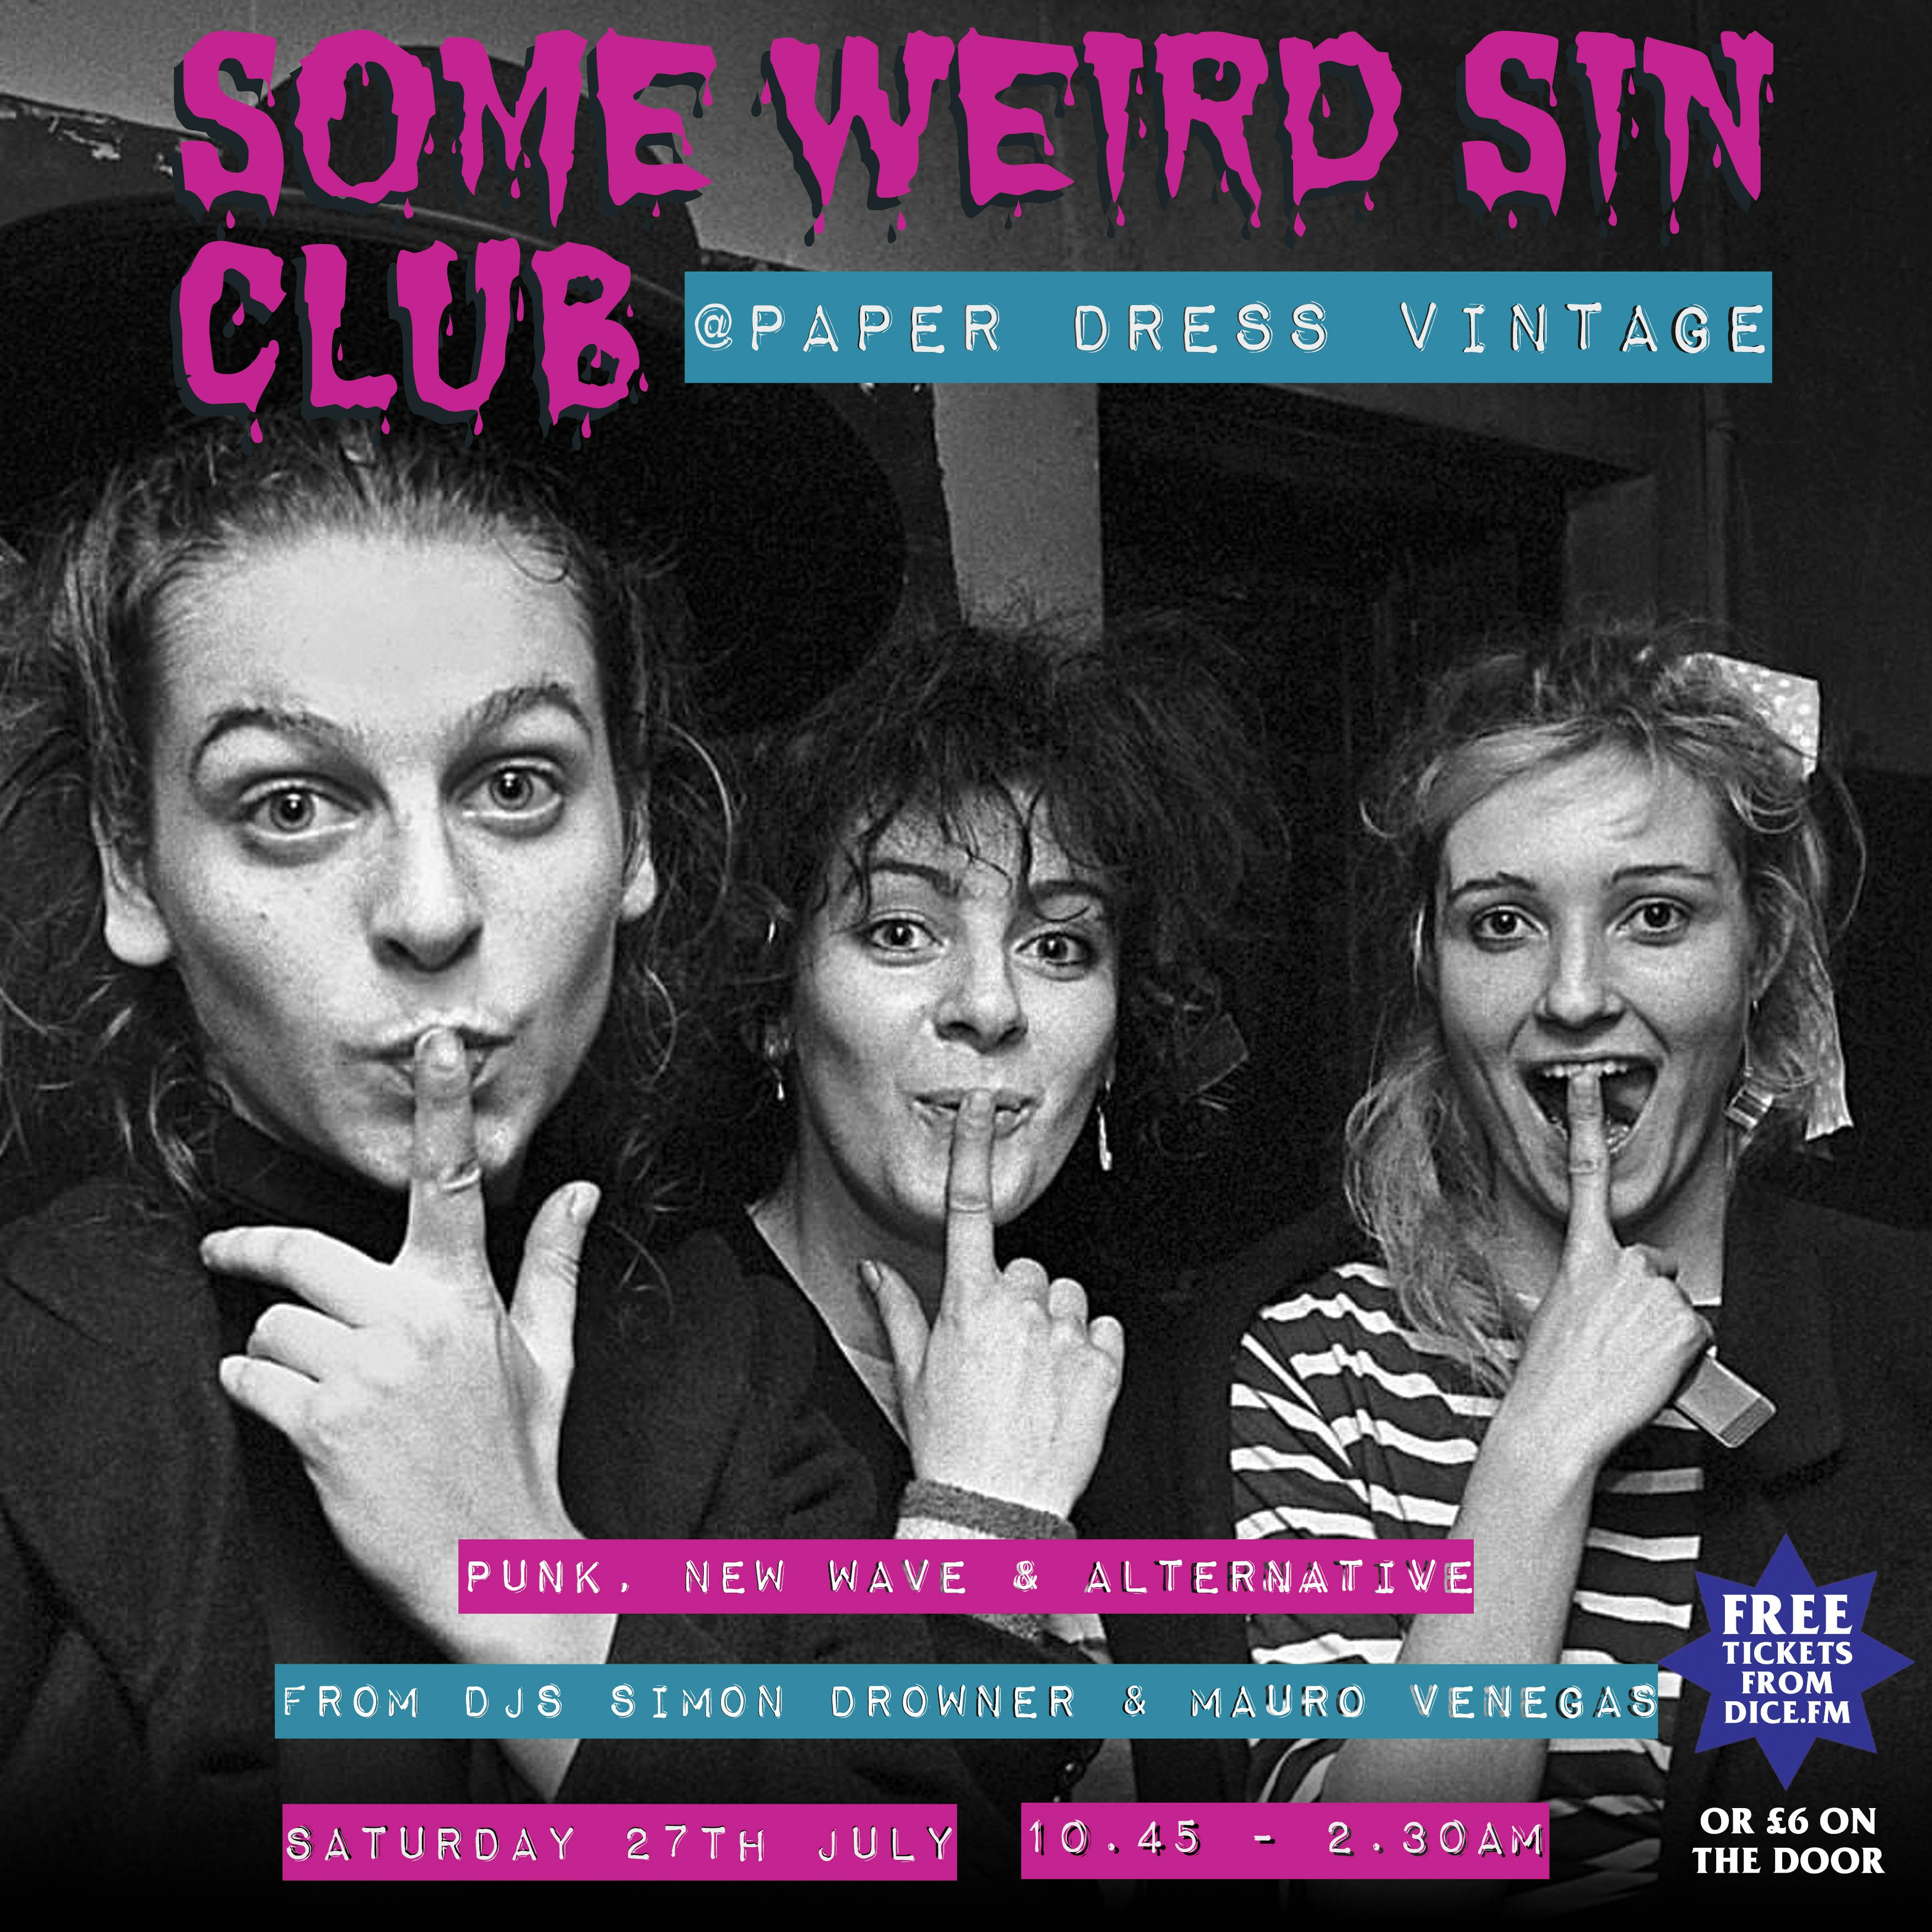 Some Weird Sin Club Night Tickets | Free | Jul 27 @ Paper Dress Vintage